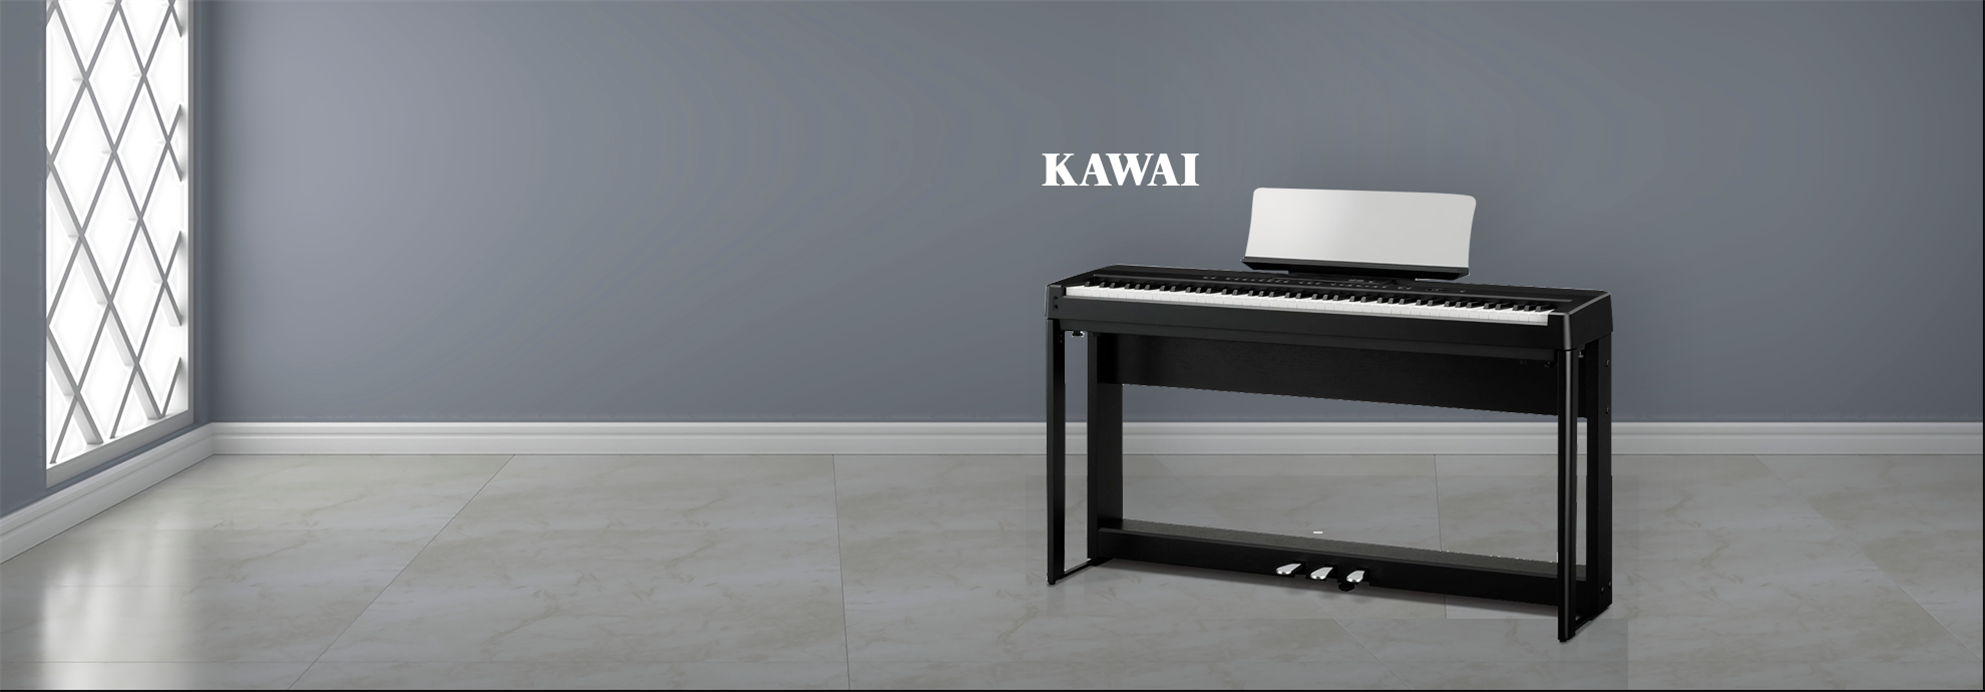 Piano Digital Portátil ES920  Em casa, no palco, leve sua música